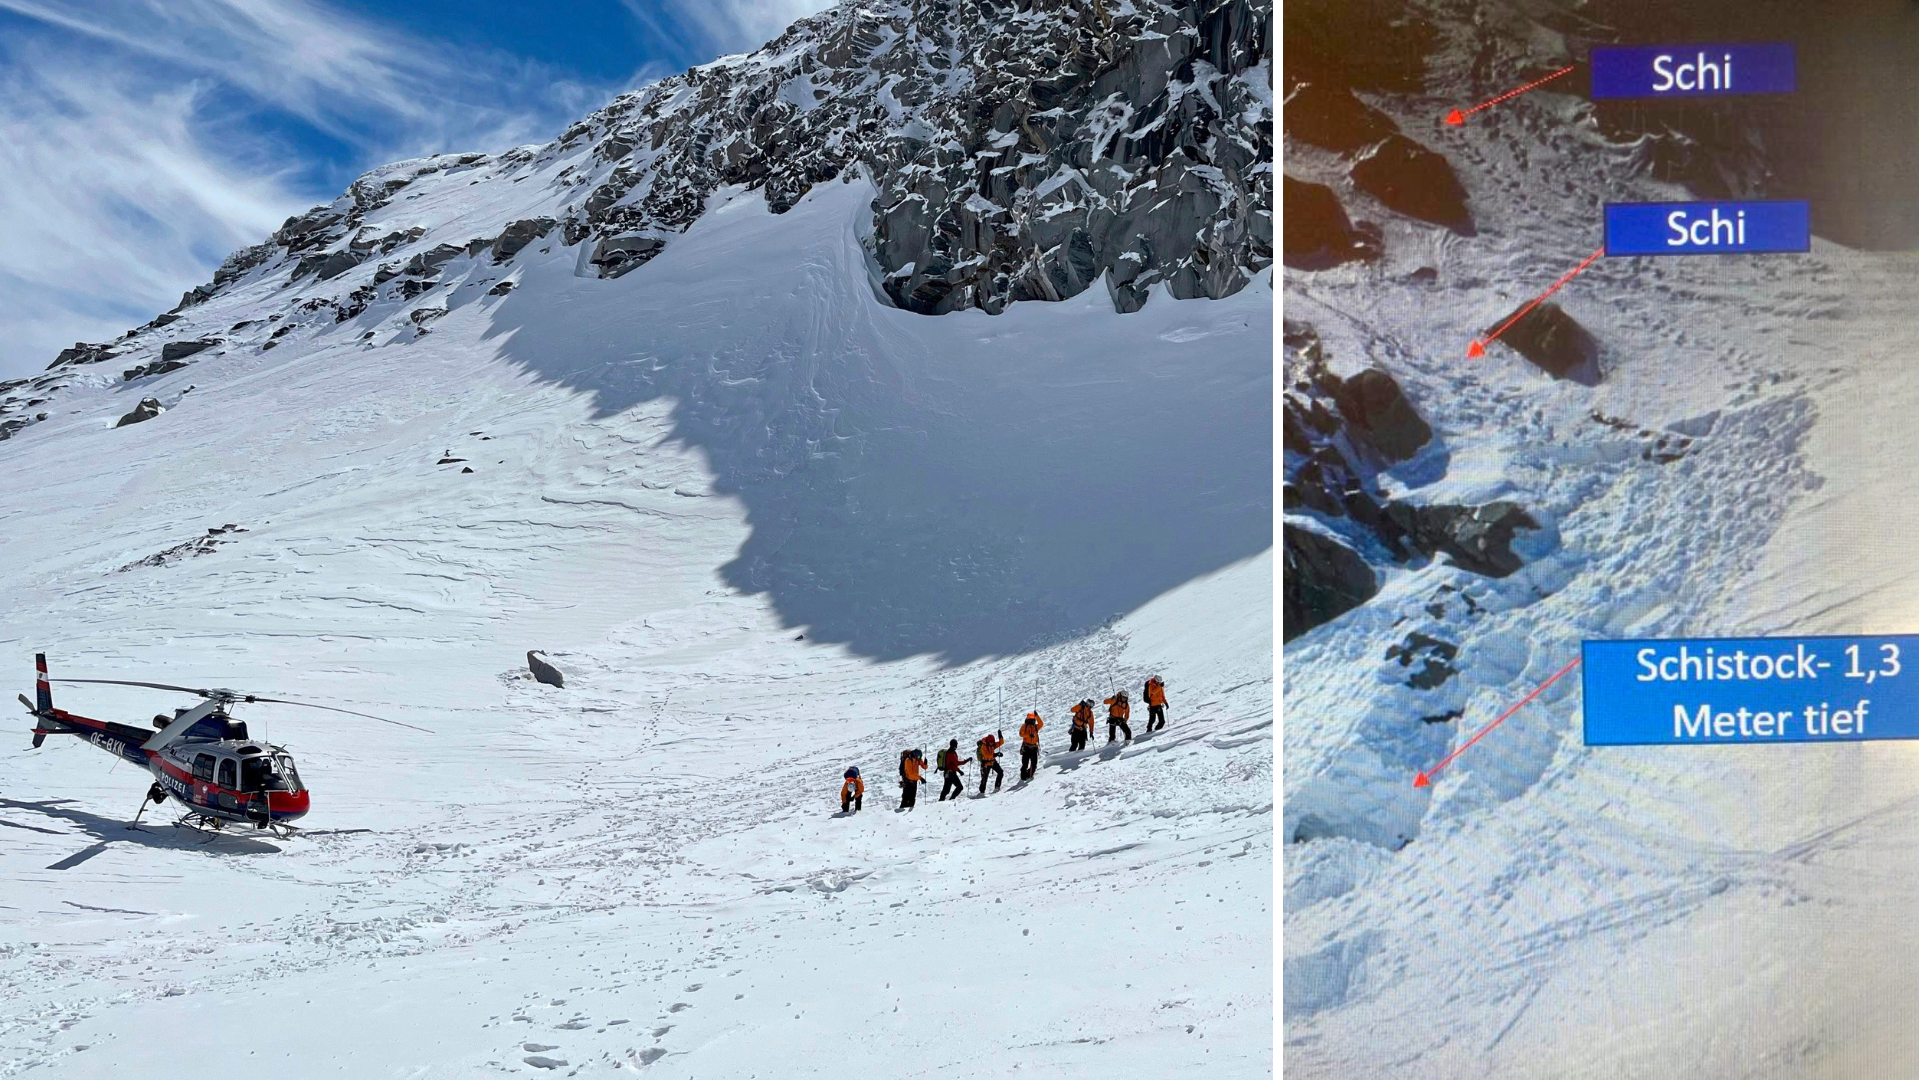 Beide Skier hat man in einer steilen Flanke unter dem Gipfel gefunden, darunter einen Skistock. Vom Vermissten fehlt jedoch weiter jede Spur. (Bild: zoom.tirol, Alpinpolizei)